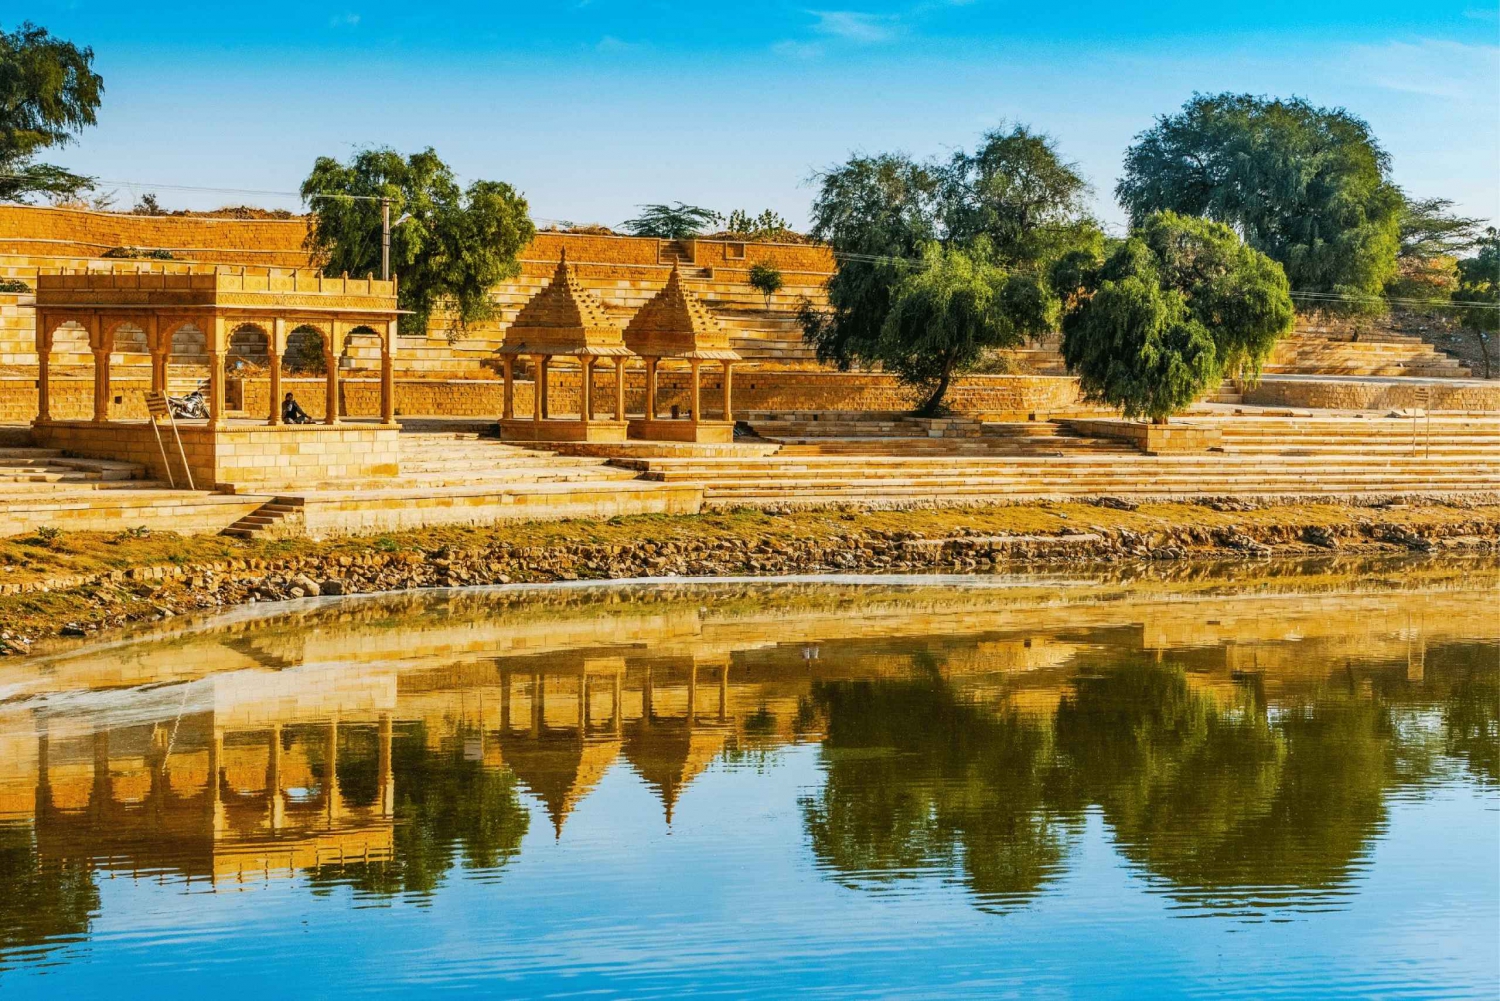 Kulturarv och kulturella spår i Jaisalmer - guidad vandringstur